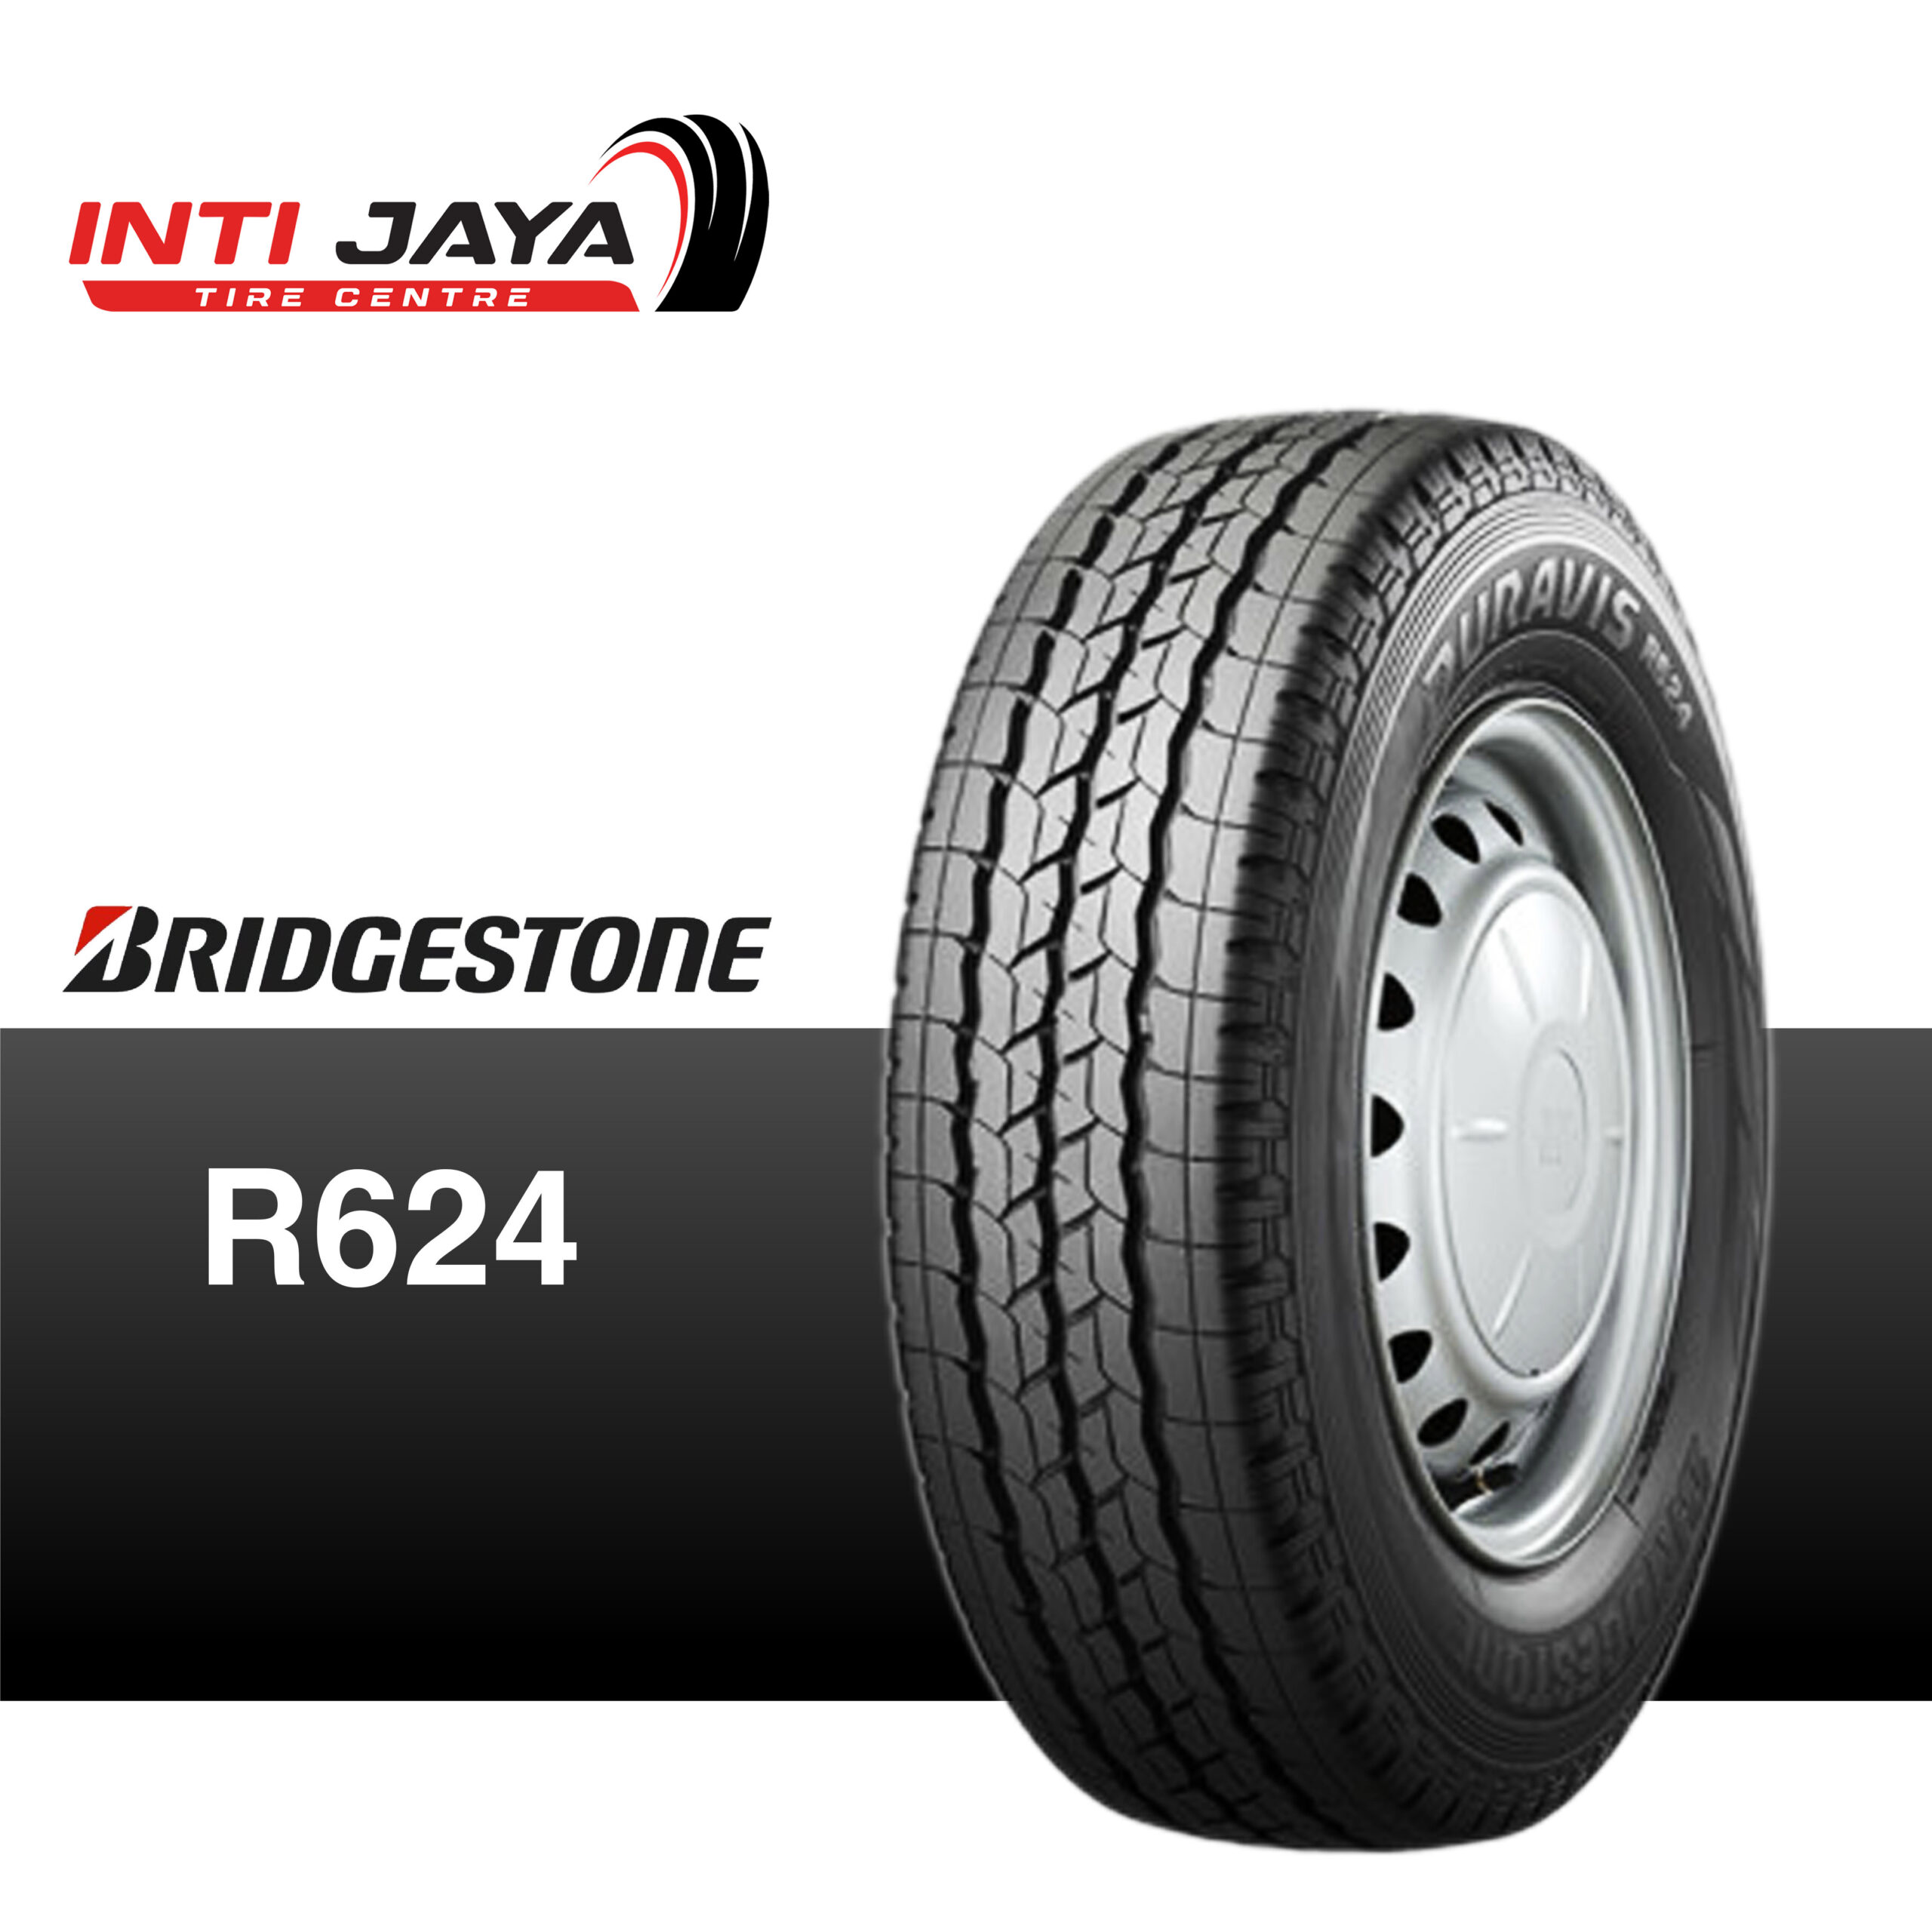 Bridgestone Duravis R624